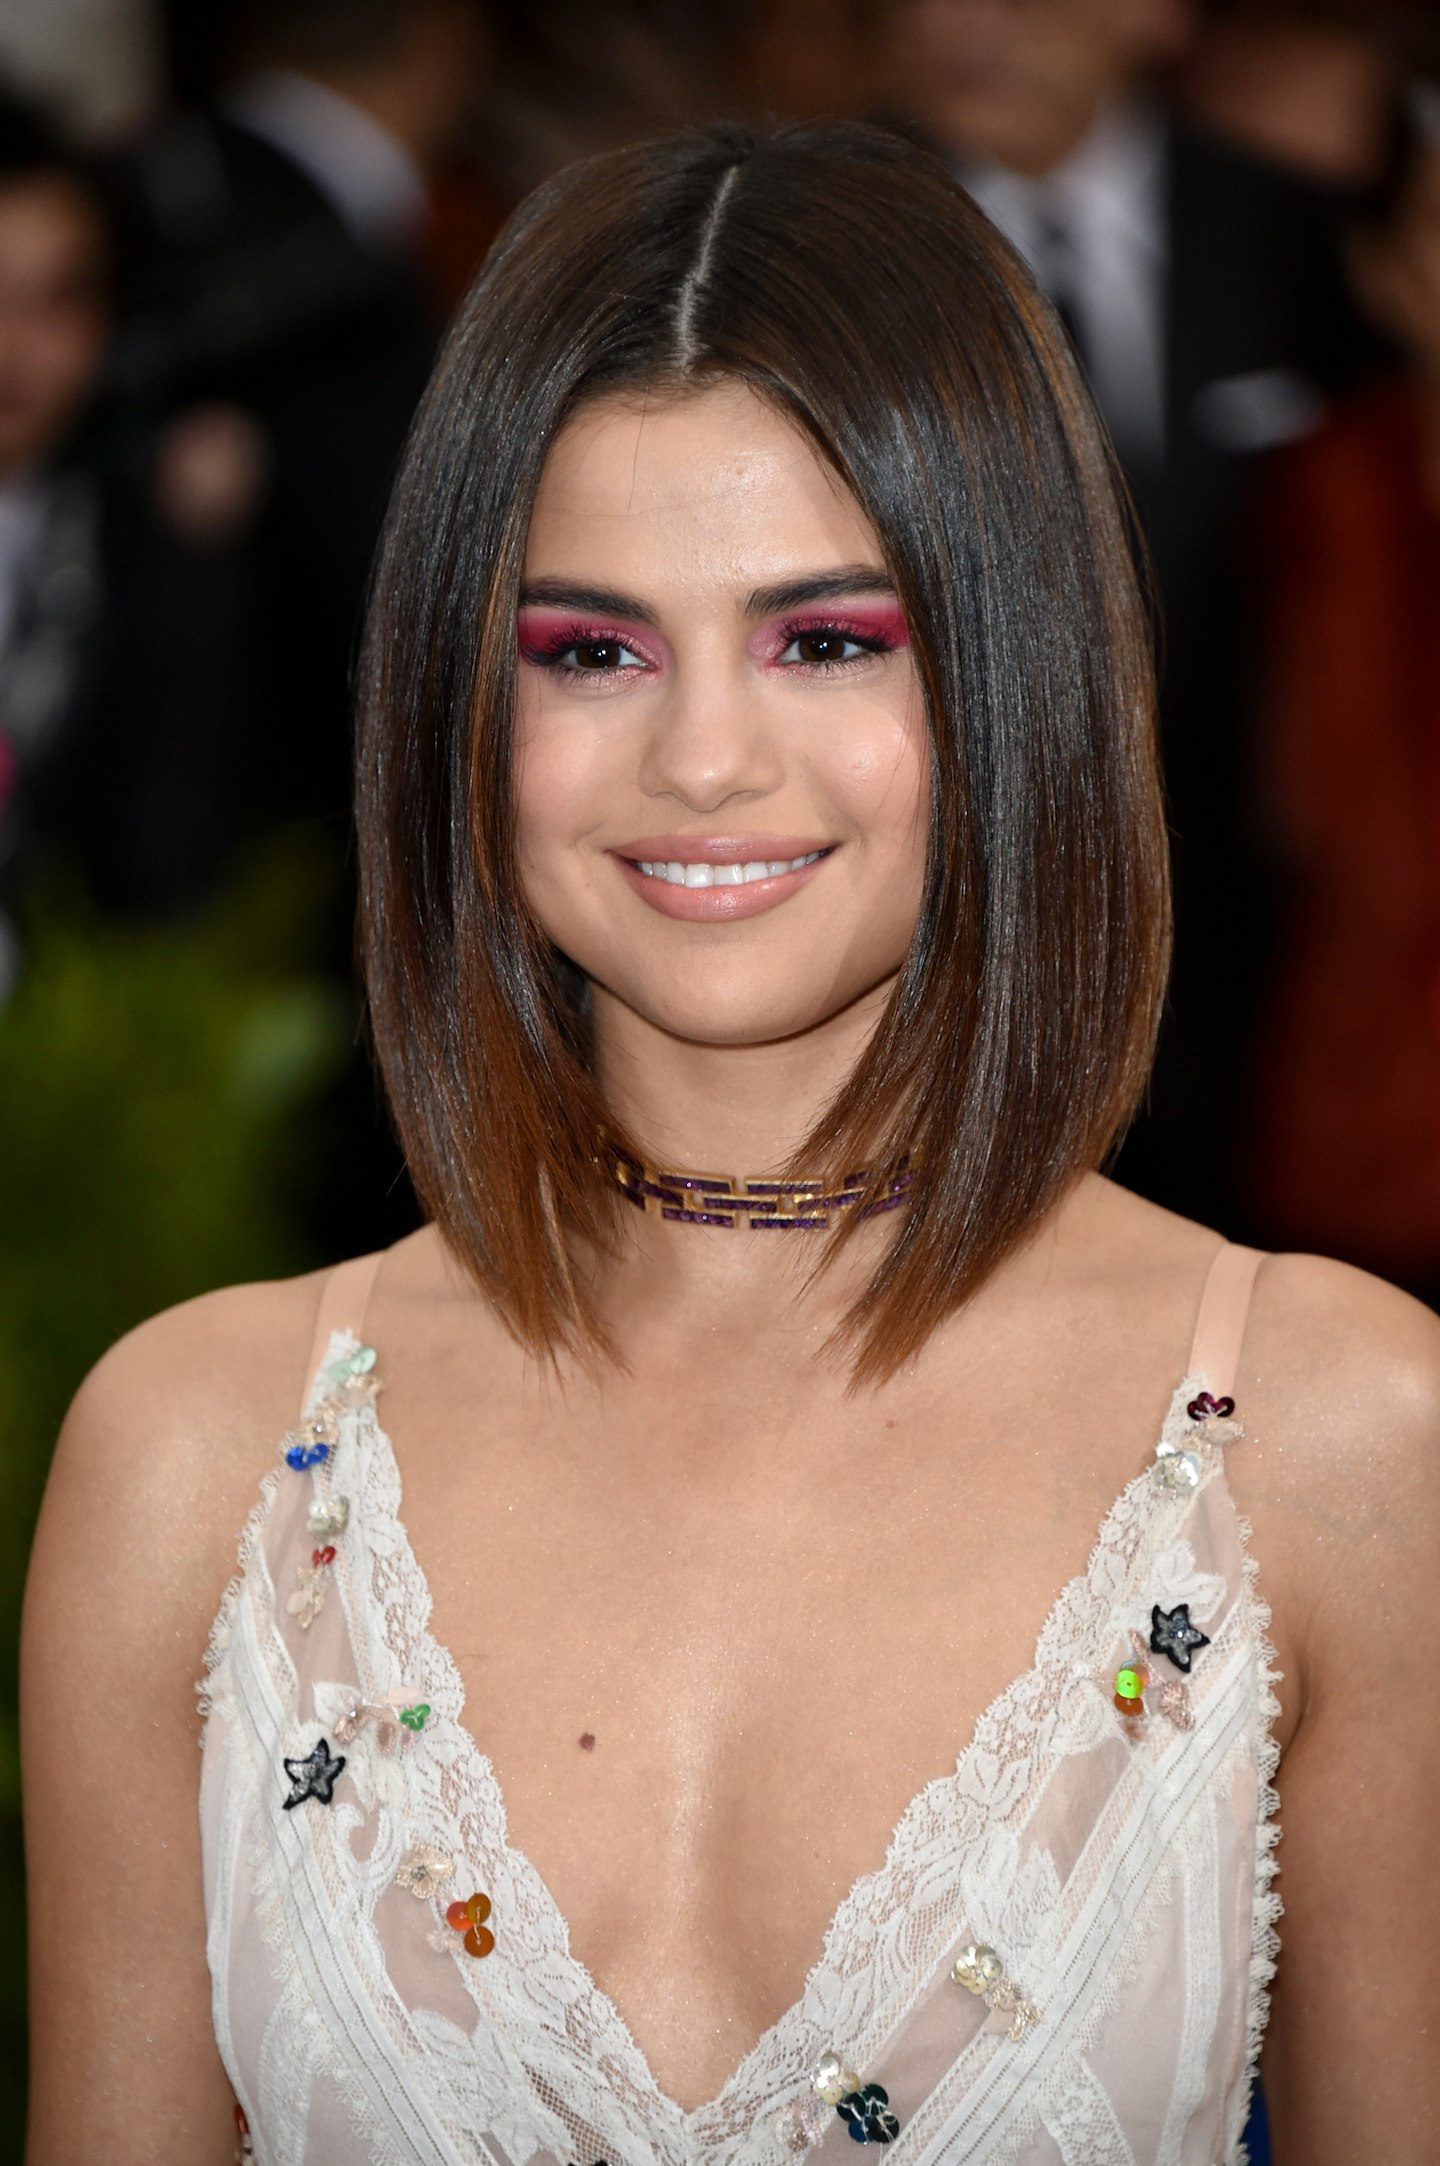 Selena Gomez at the Met Gala 2017